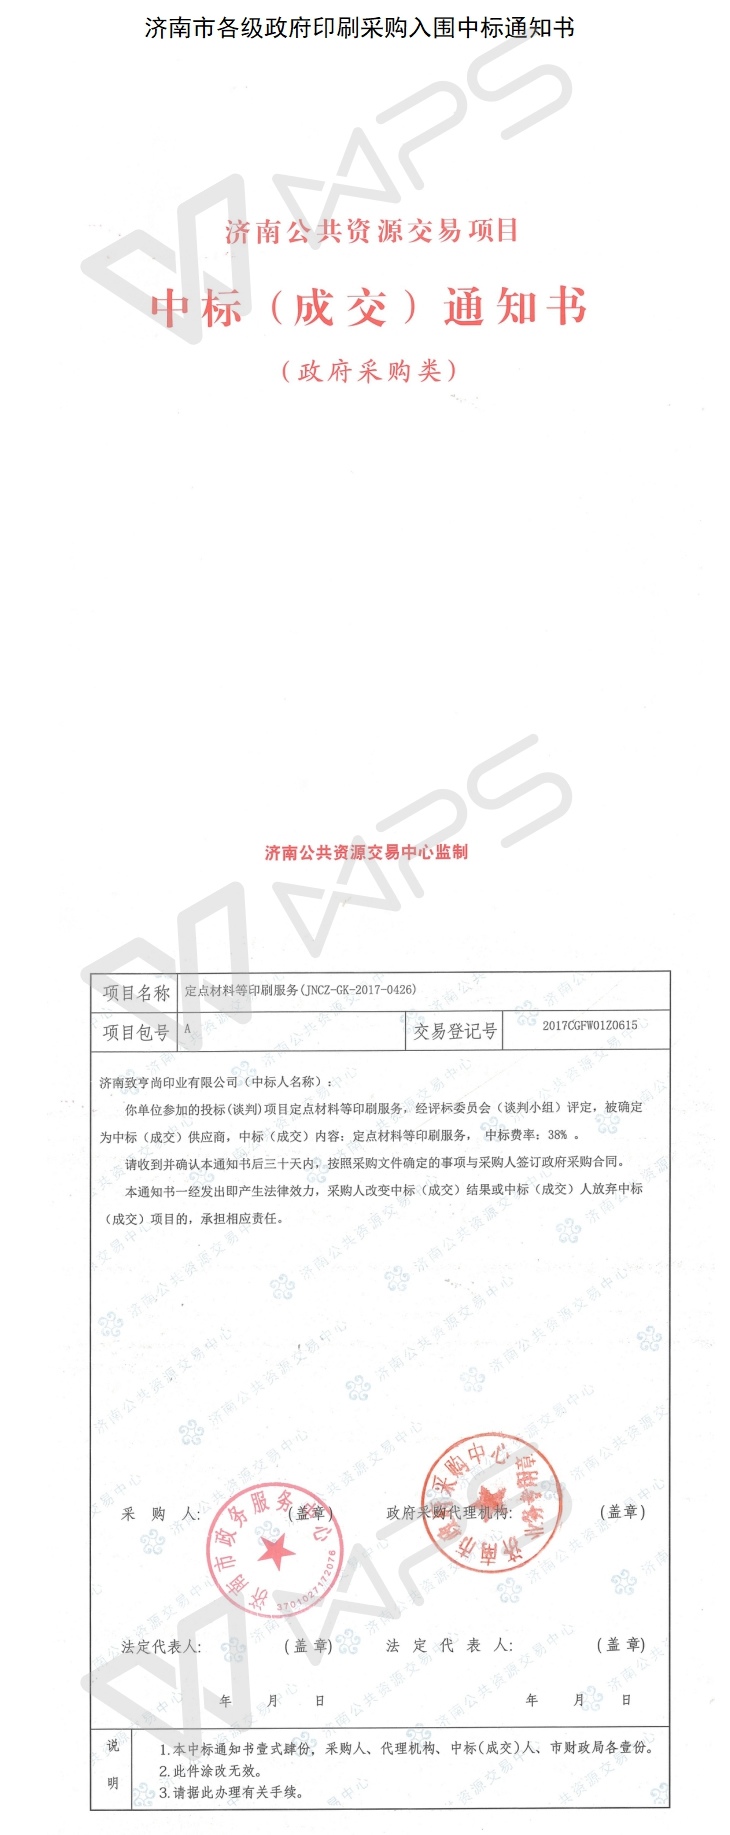 热烈祝贺济南致亨尚印业被指定为济南行政事业单位印刷服务商(图1)